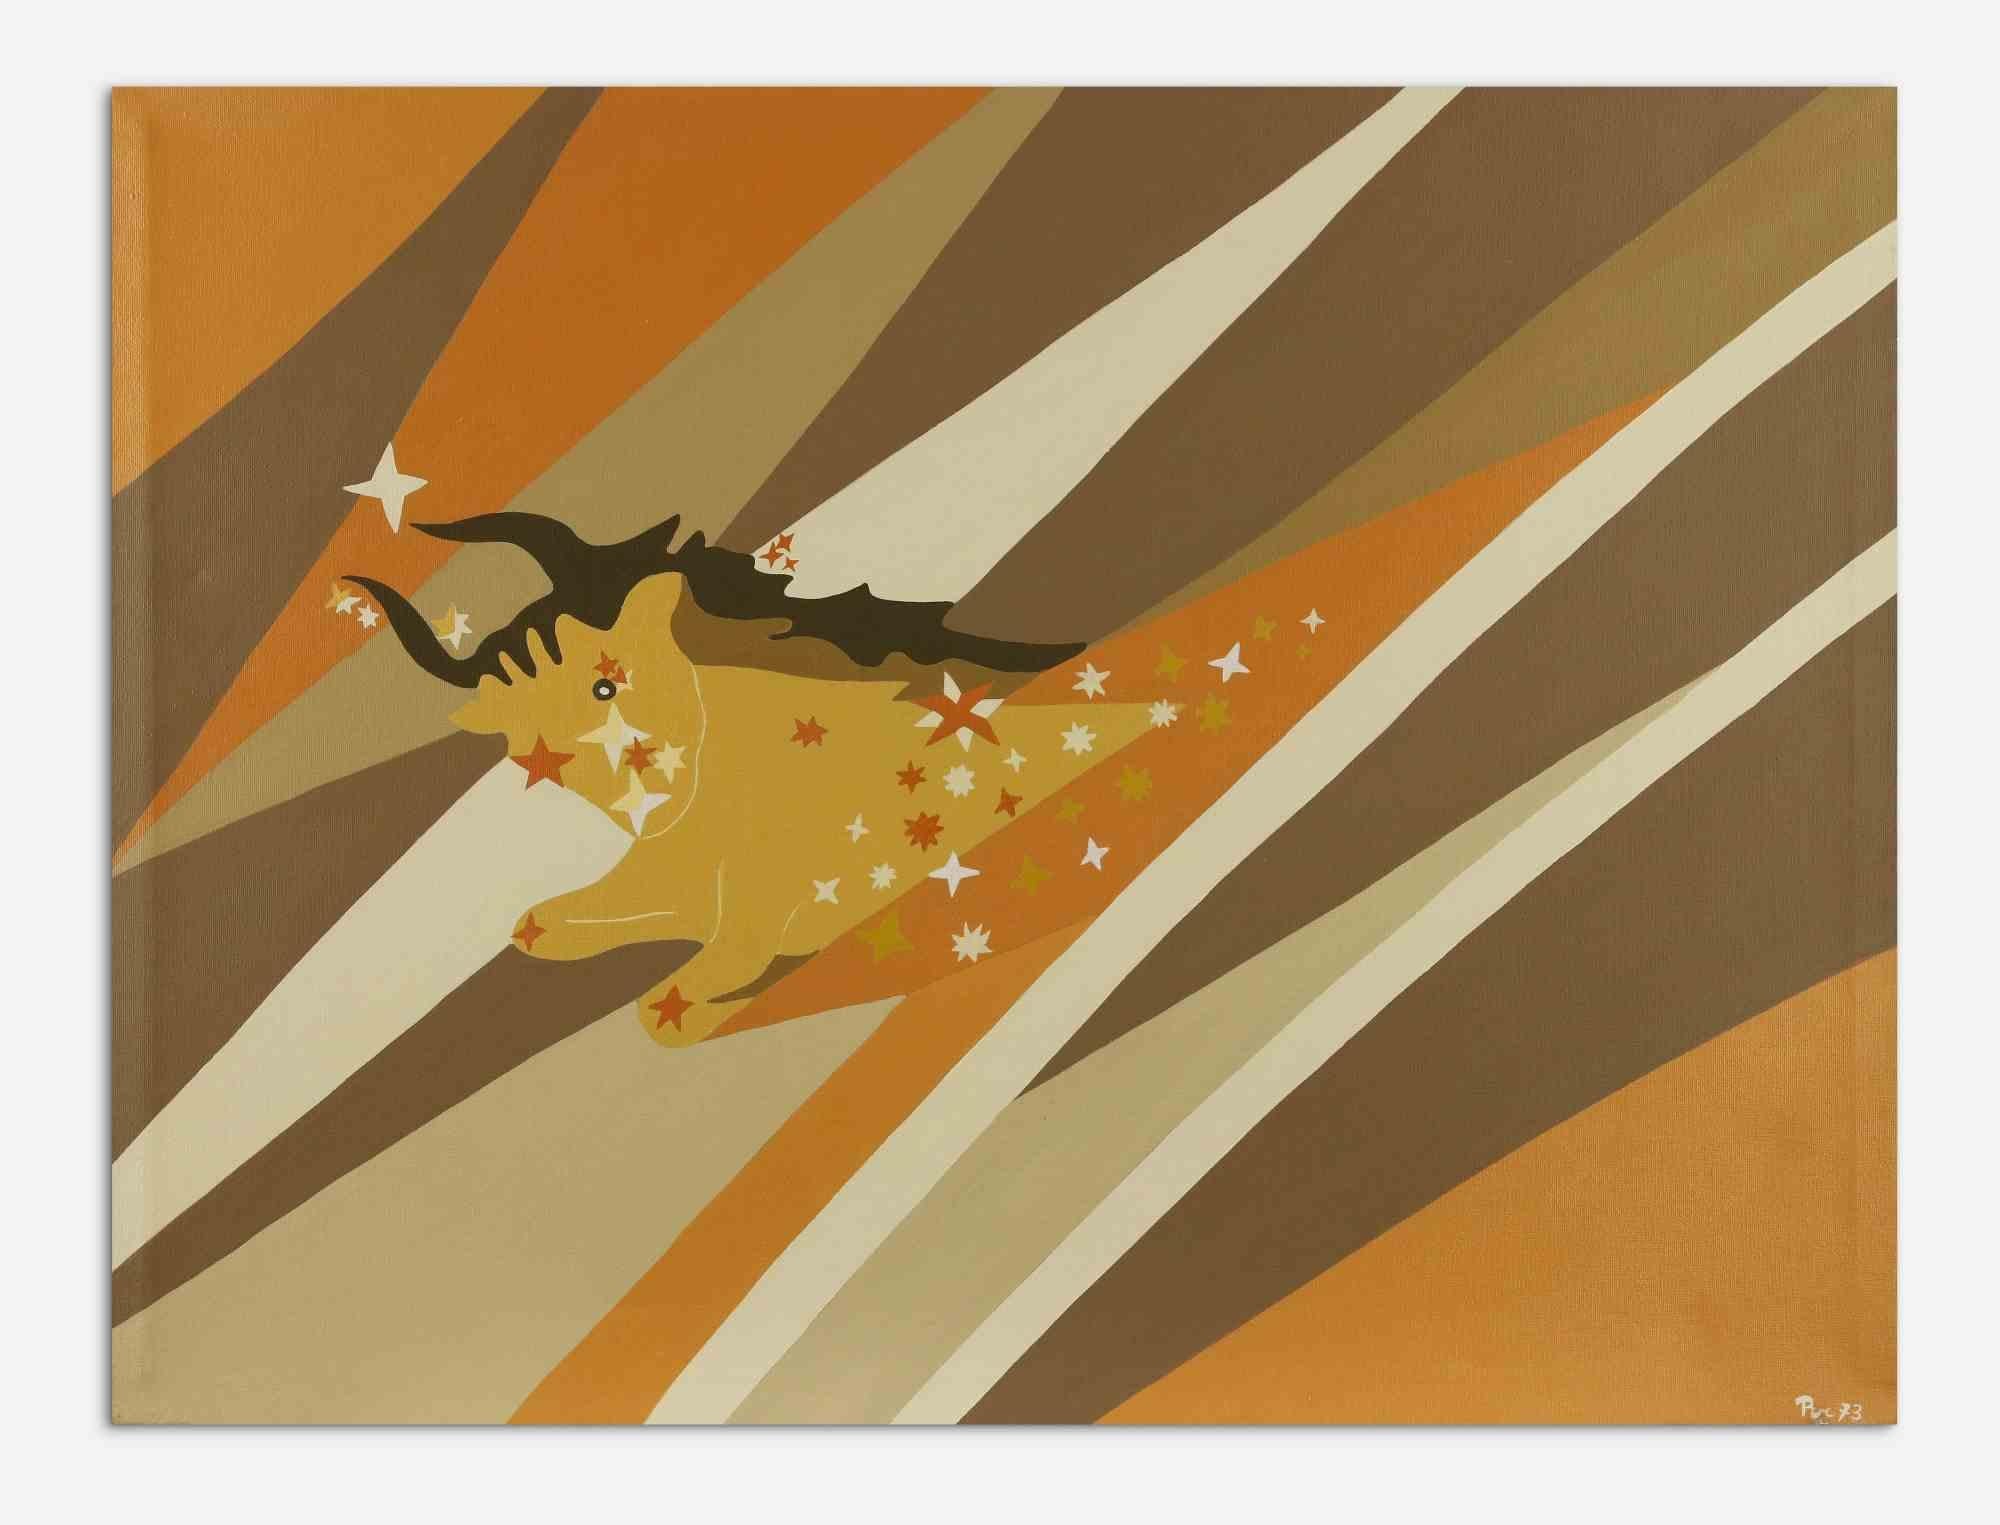 Taurus ist ein zeitgenössisches Kunstwerk von Genny Puccini aus dem Jahr 1973.

Acryl auf Leinwand.

Vom Künstler am unteren Rand signiert und datiert.

Dieses farbenfrohe Kunstwerk ist die perfekte lebendige Dekoration für Ihr Zuhause,